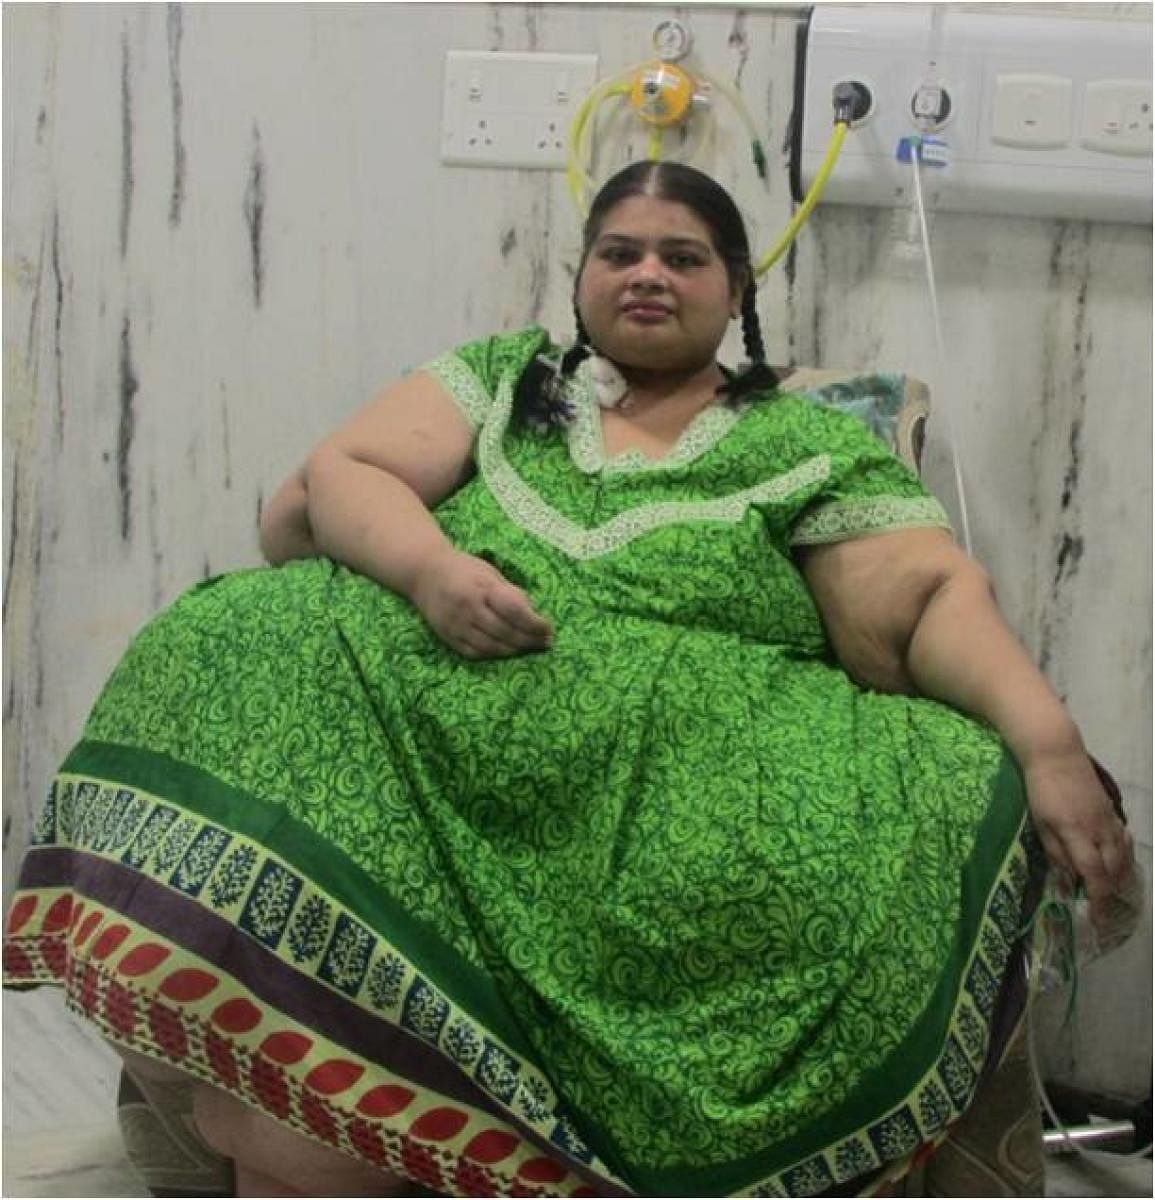 Pre-operation, Amita weighed around 300 kg.